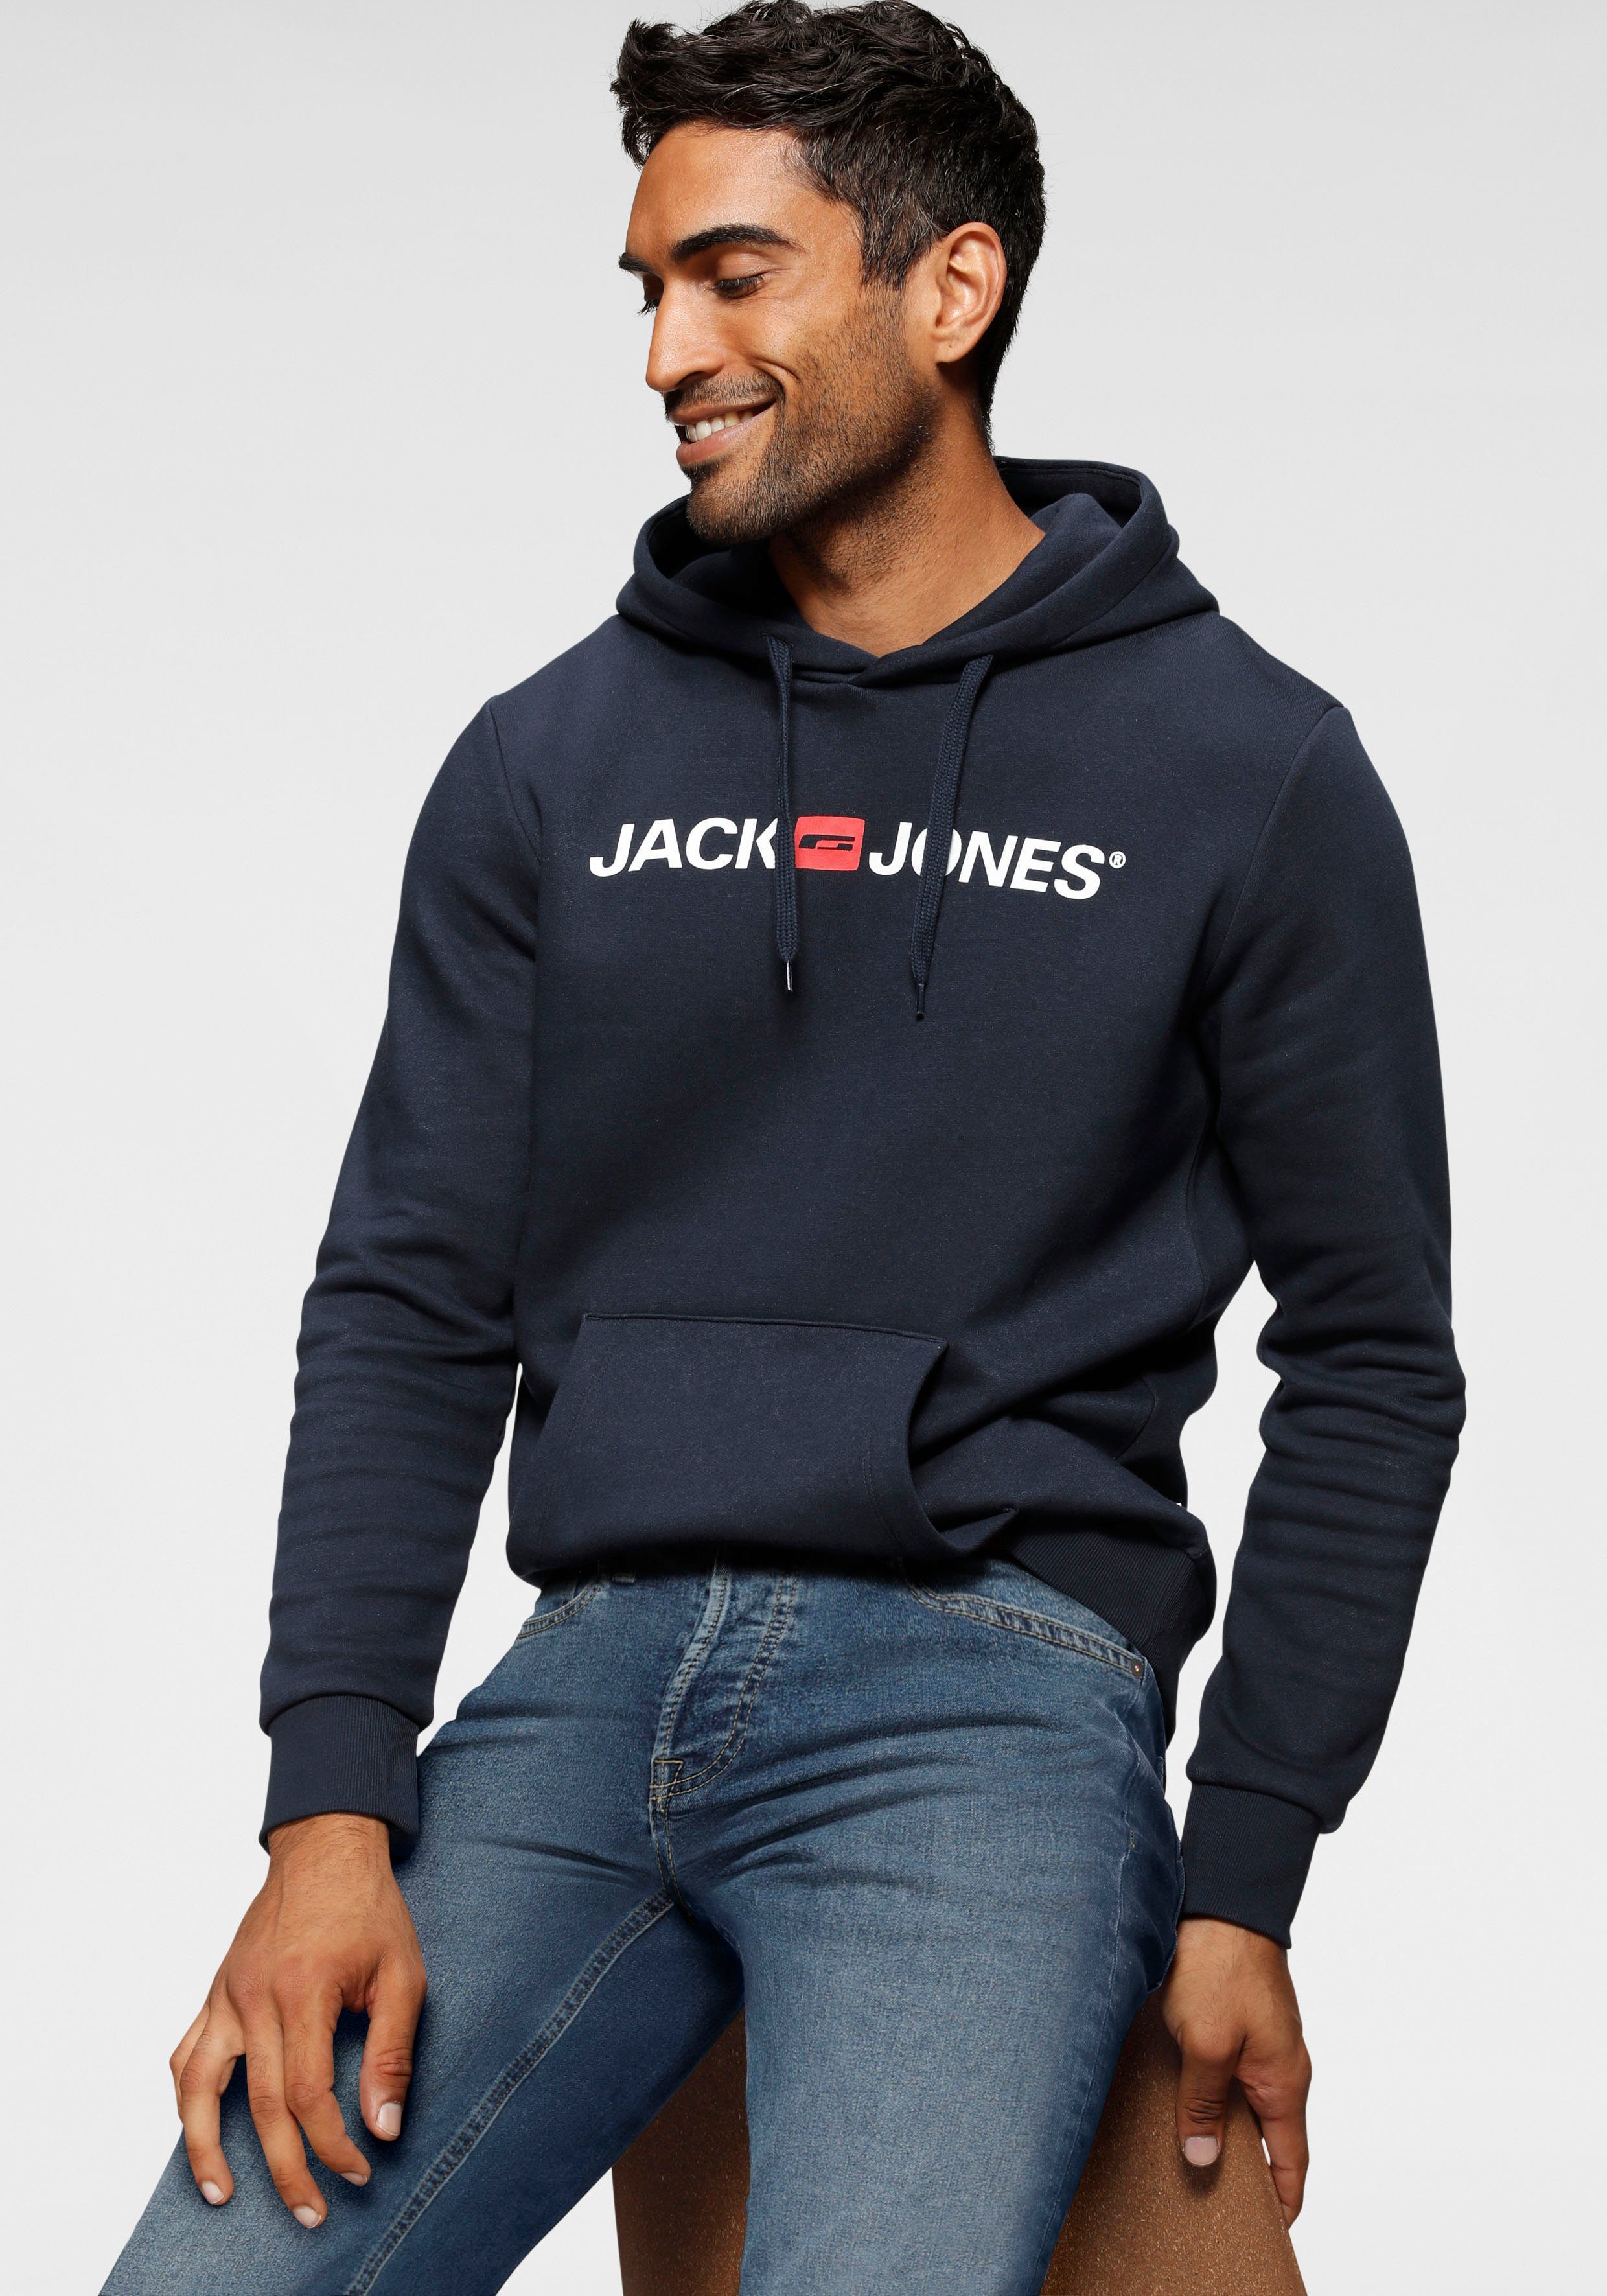 Jack & Jones Herren Pullover online kaufen | OTTO